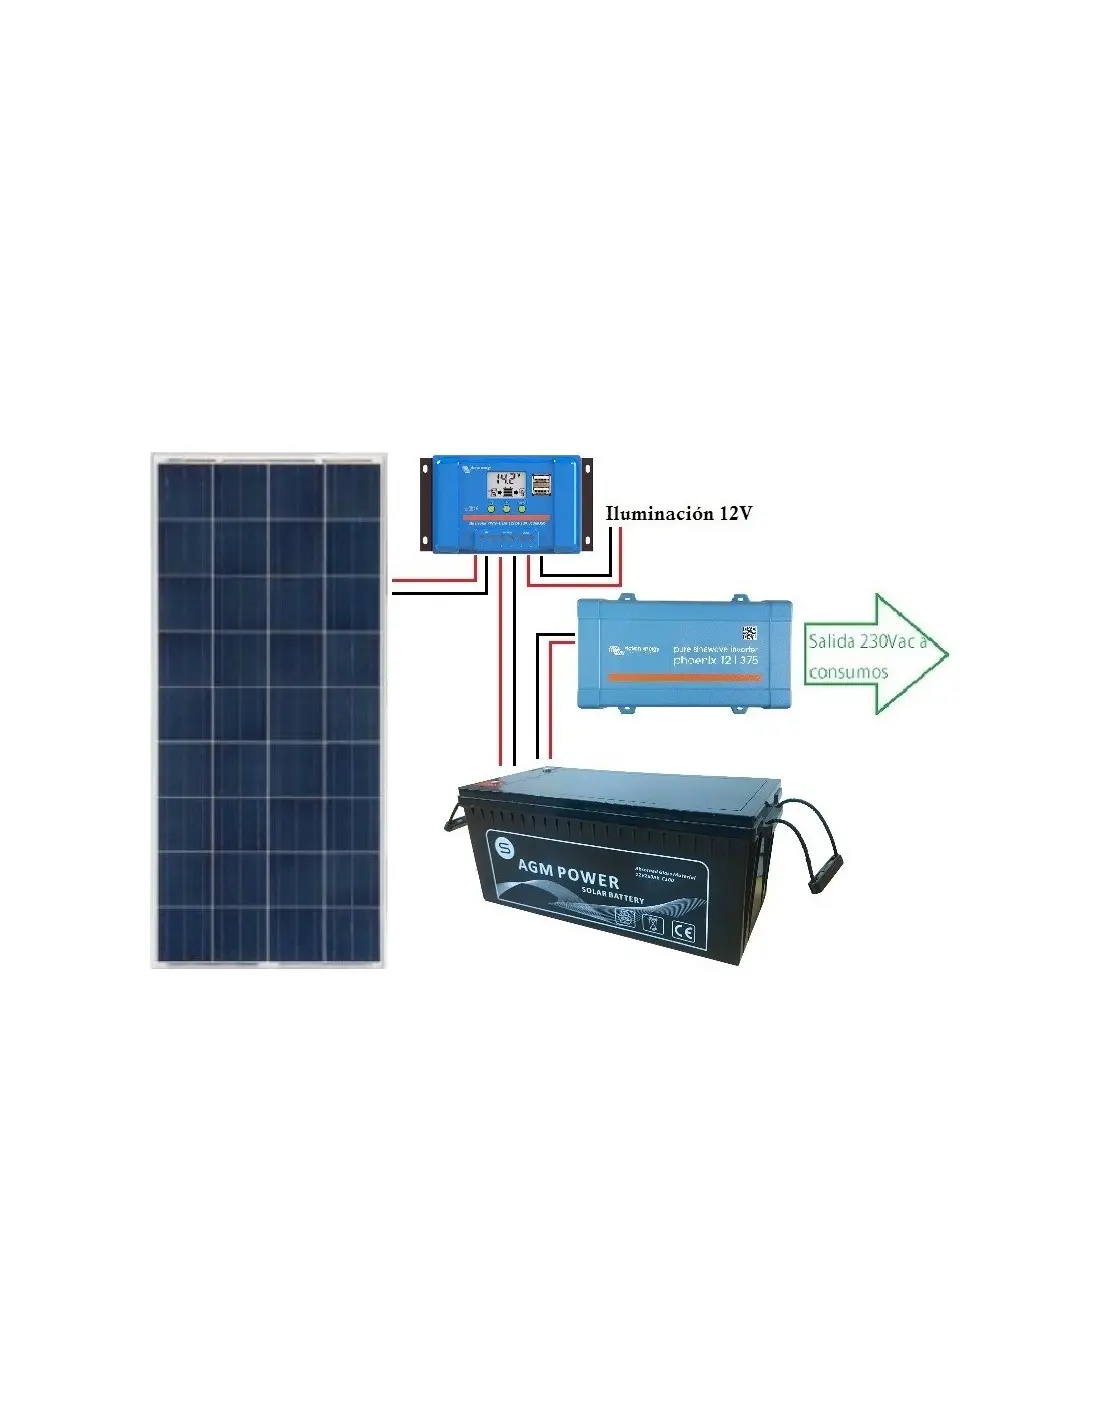 placa solar con inversor incorporado - Qué tipos de inversores solares existen